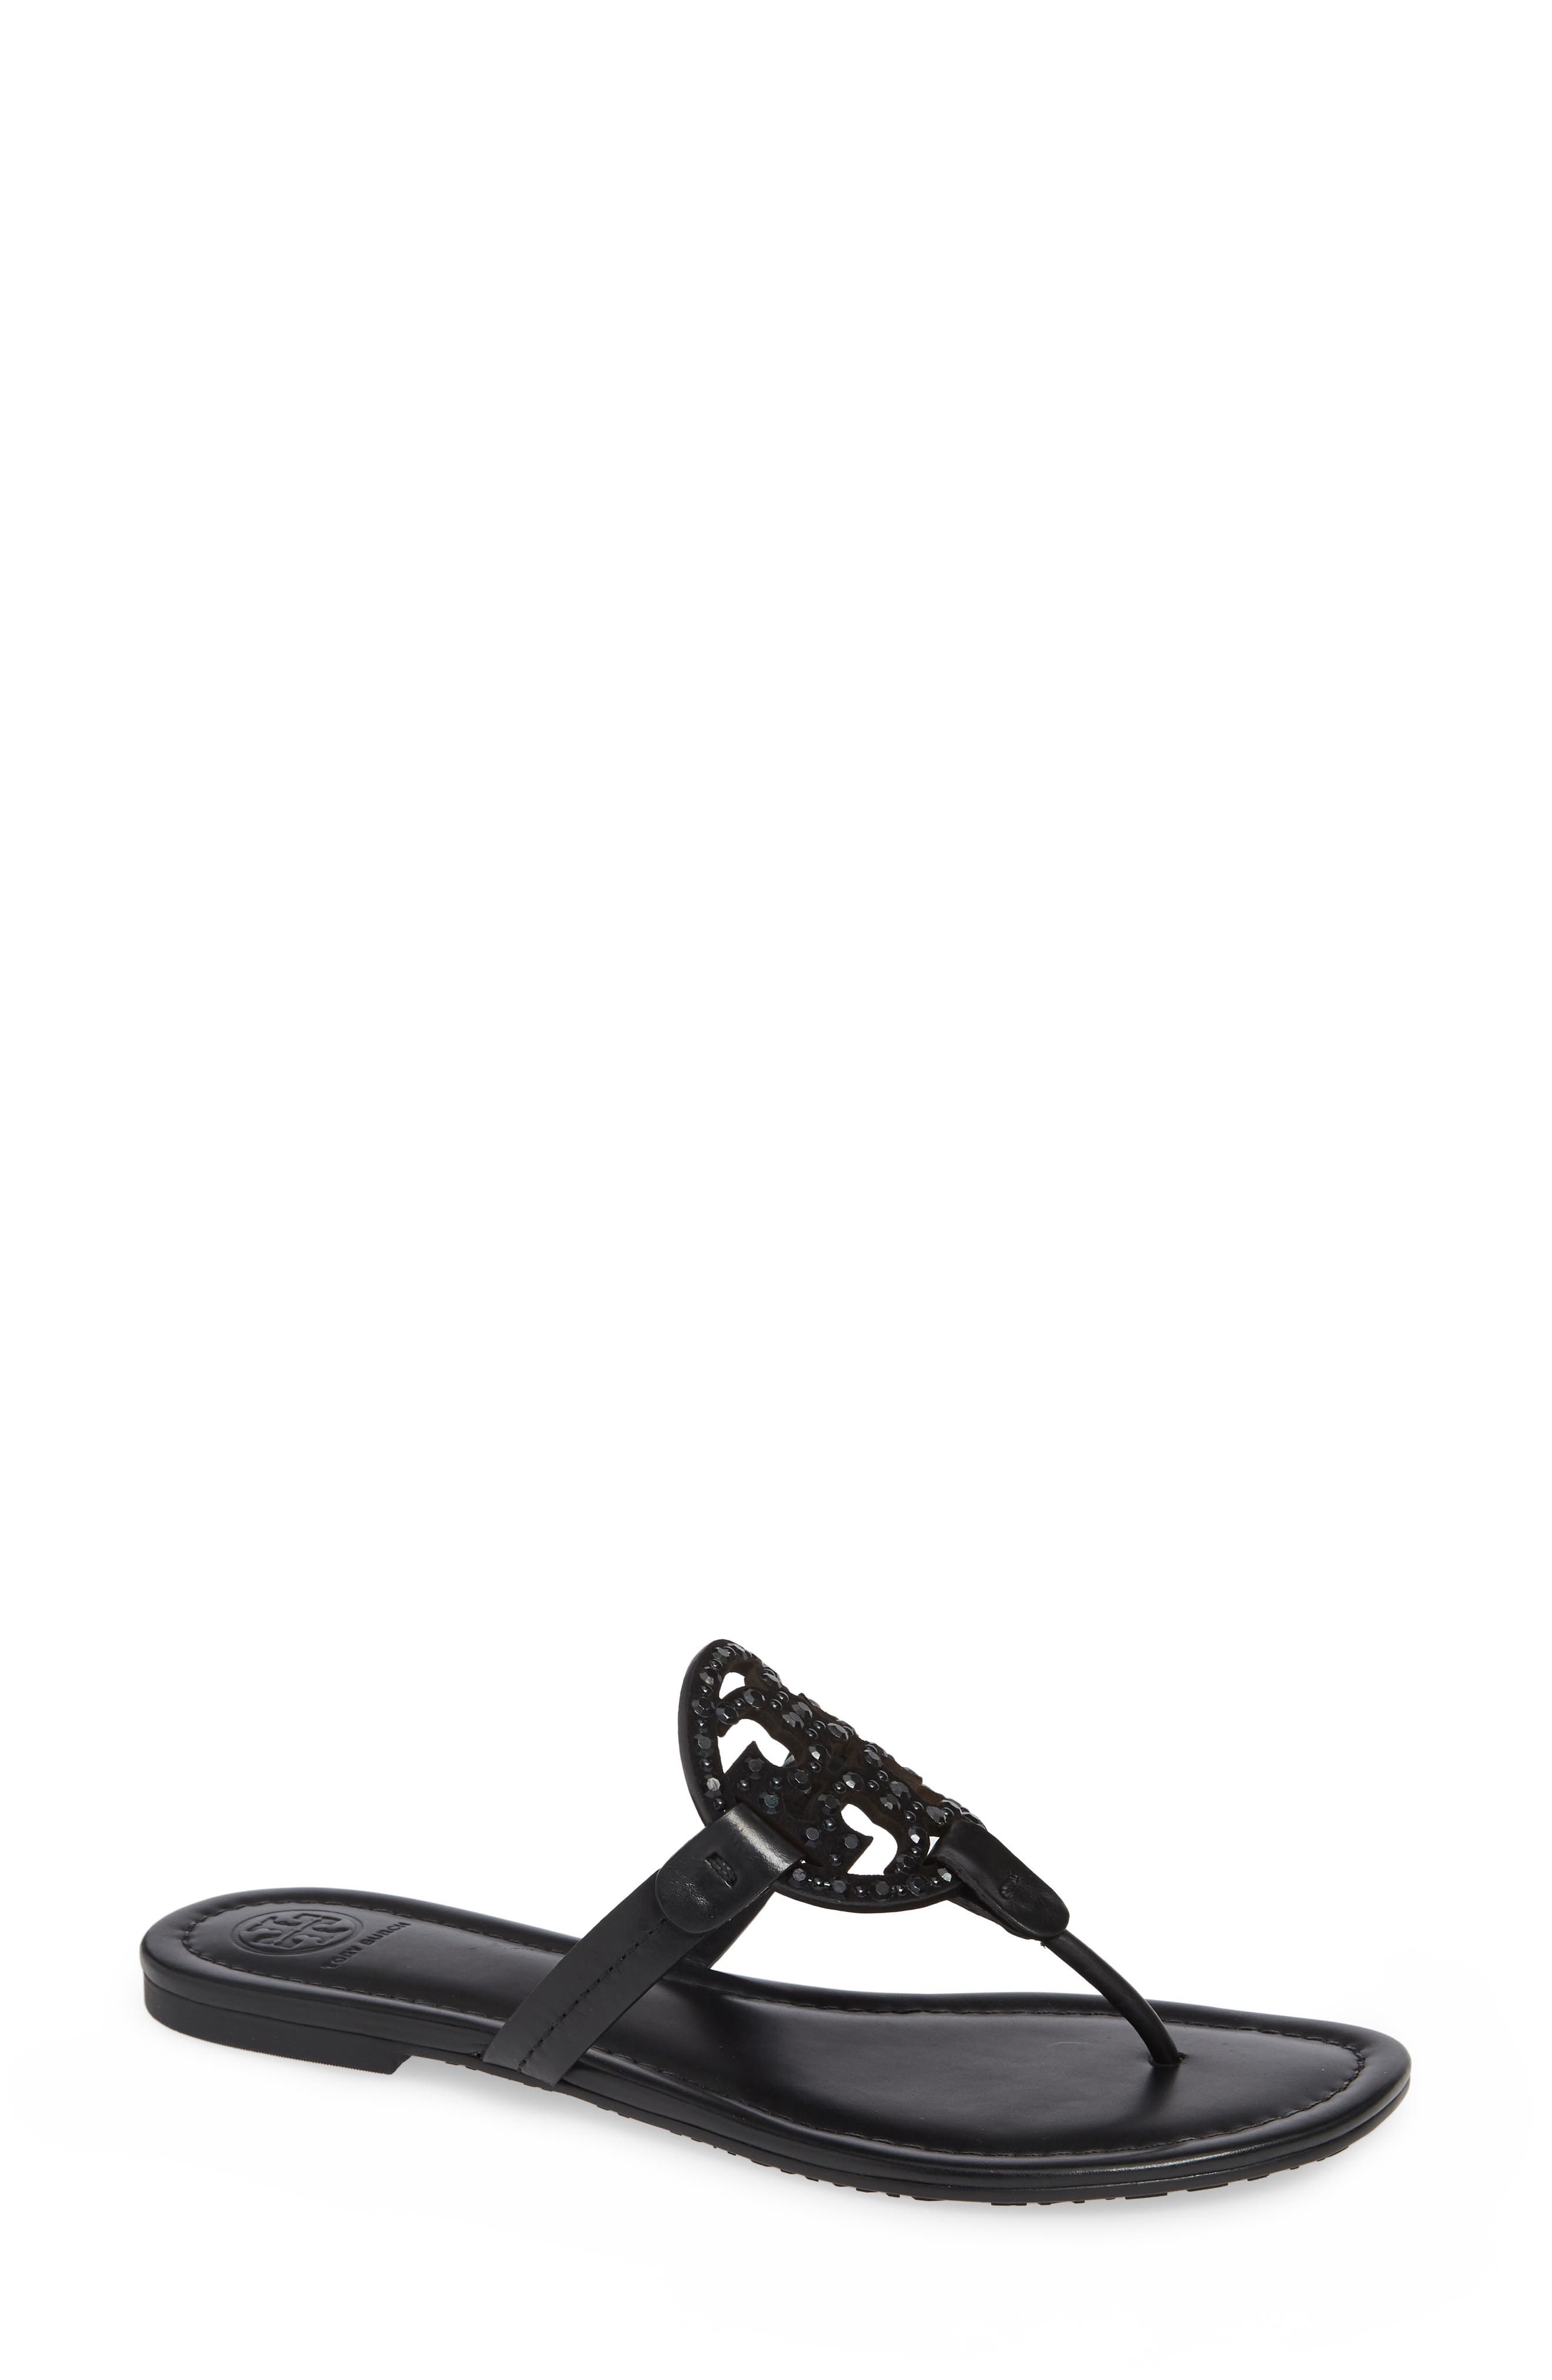 UPC 192485001648 product image for Women's Tory Burch Miller Embellished Sandal, Size 12 M - Black | upcitemdb.com